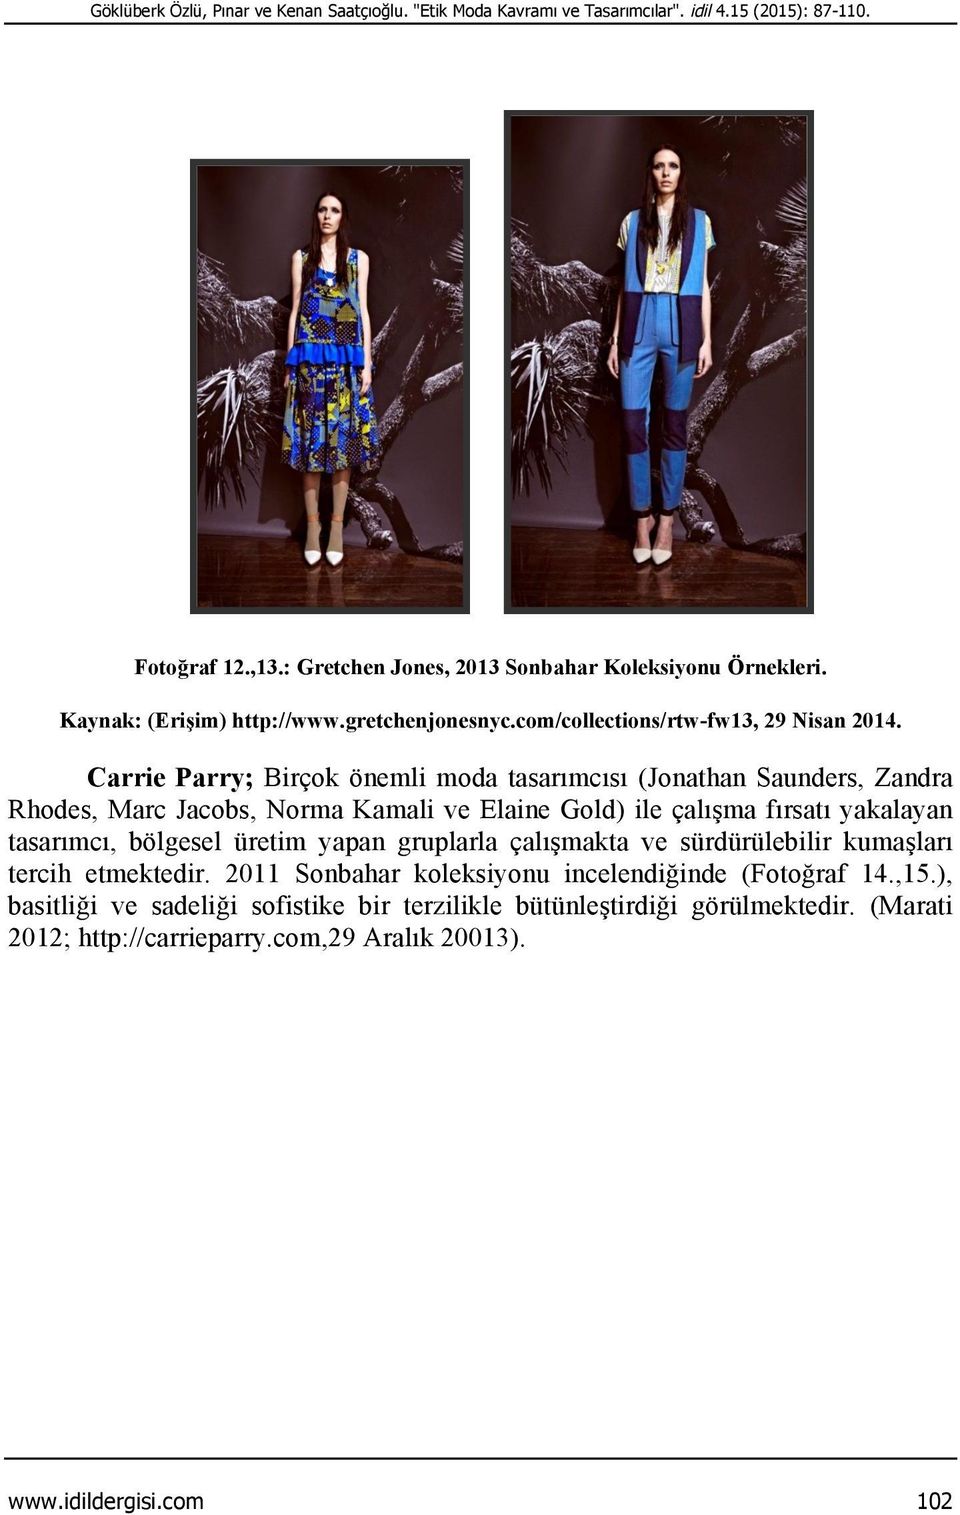 Carrie Parry; Birçok önemli moda tasarımcısı (Jonathan Saunders, Zandra Rhodes, Marc Jacobs, Norma Kamali ve Elaine Gold) ile çalışma fırsatı yakalayan tasarımcı, bölgesel üretim